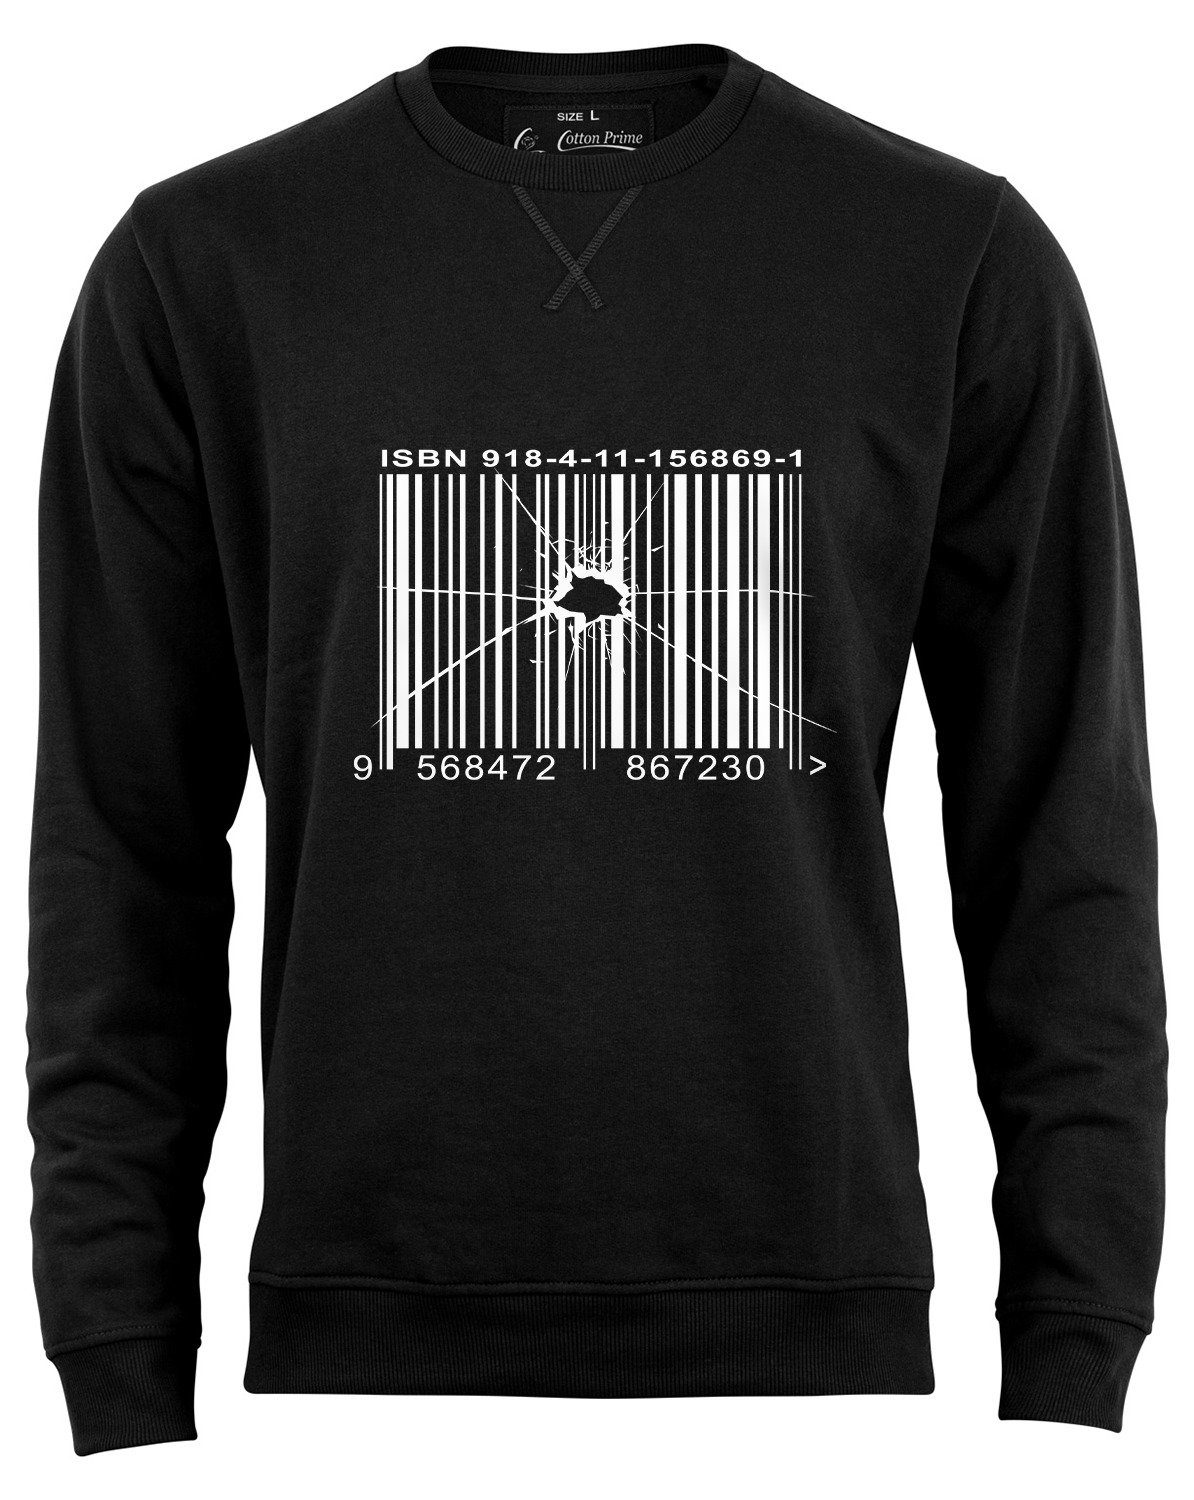 Cotton Prime® of weichem Sweatshirt Out Schwarz Barcode mit Order - Innenfleece